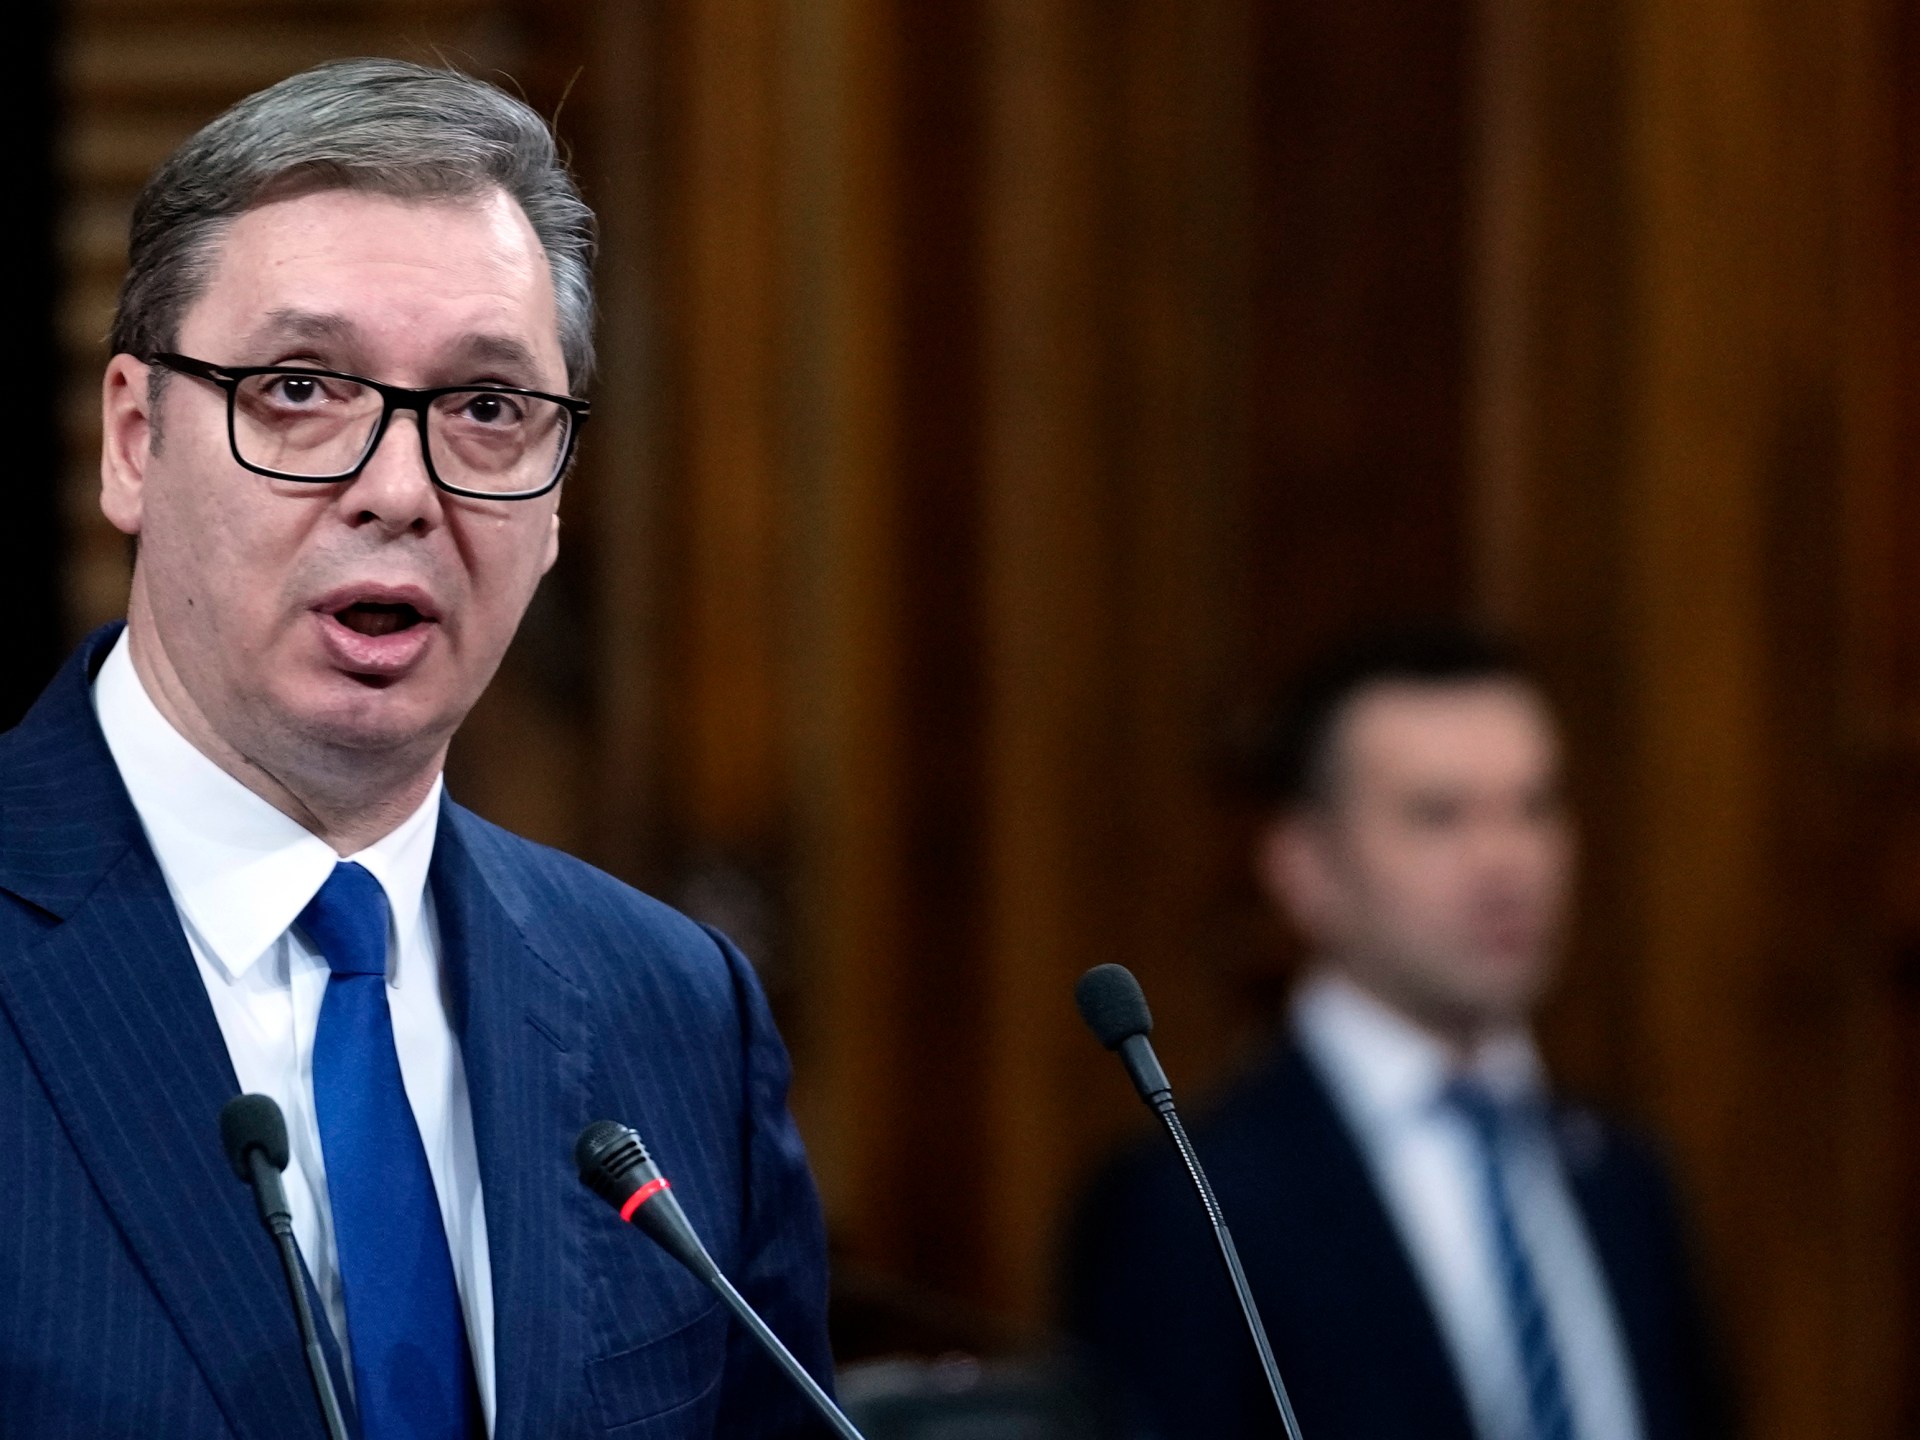 Serbia to maintain ‘military neutrality’, president says